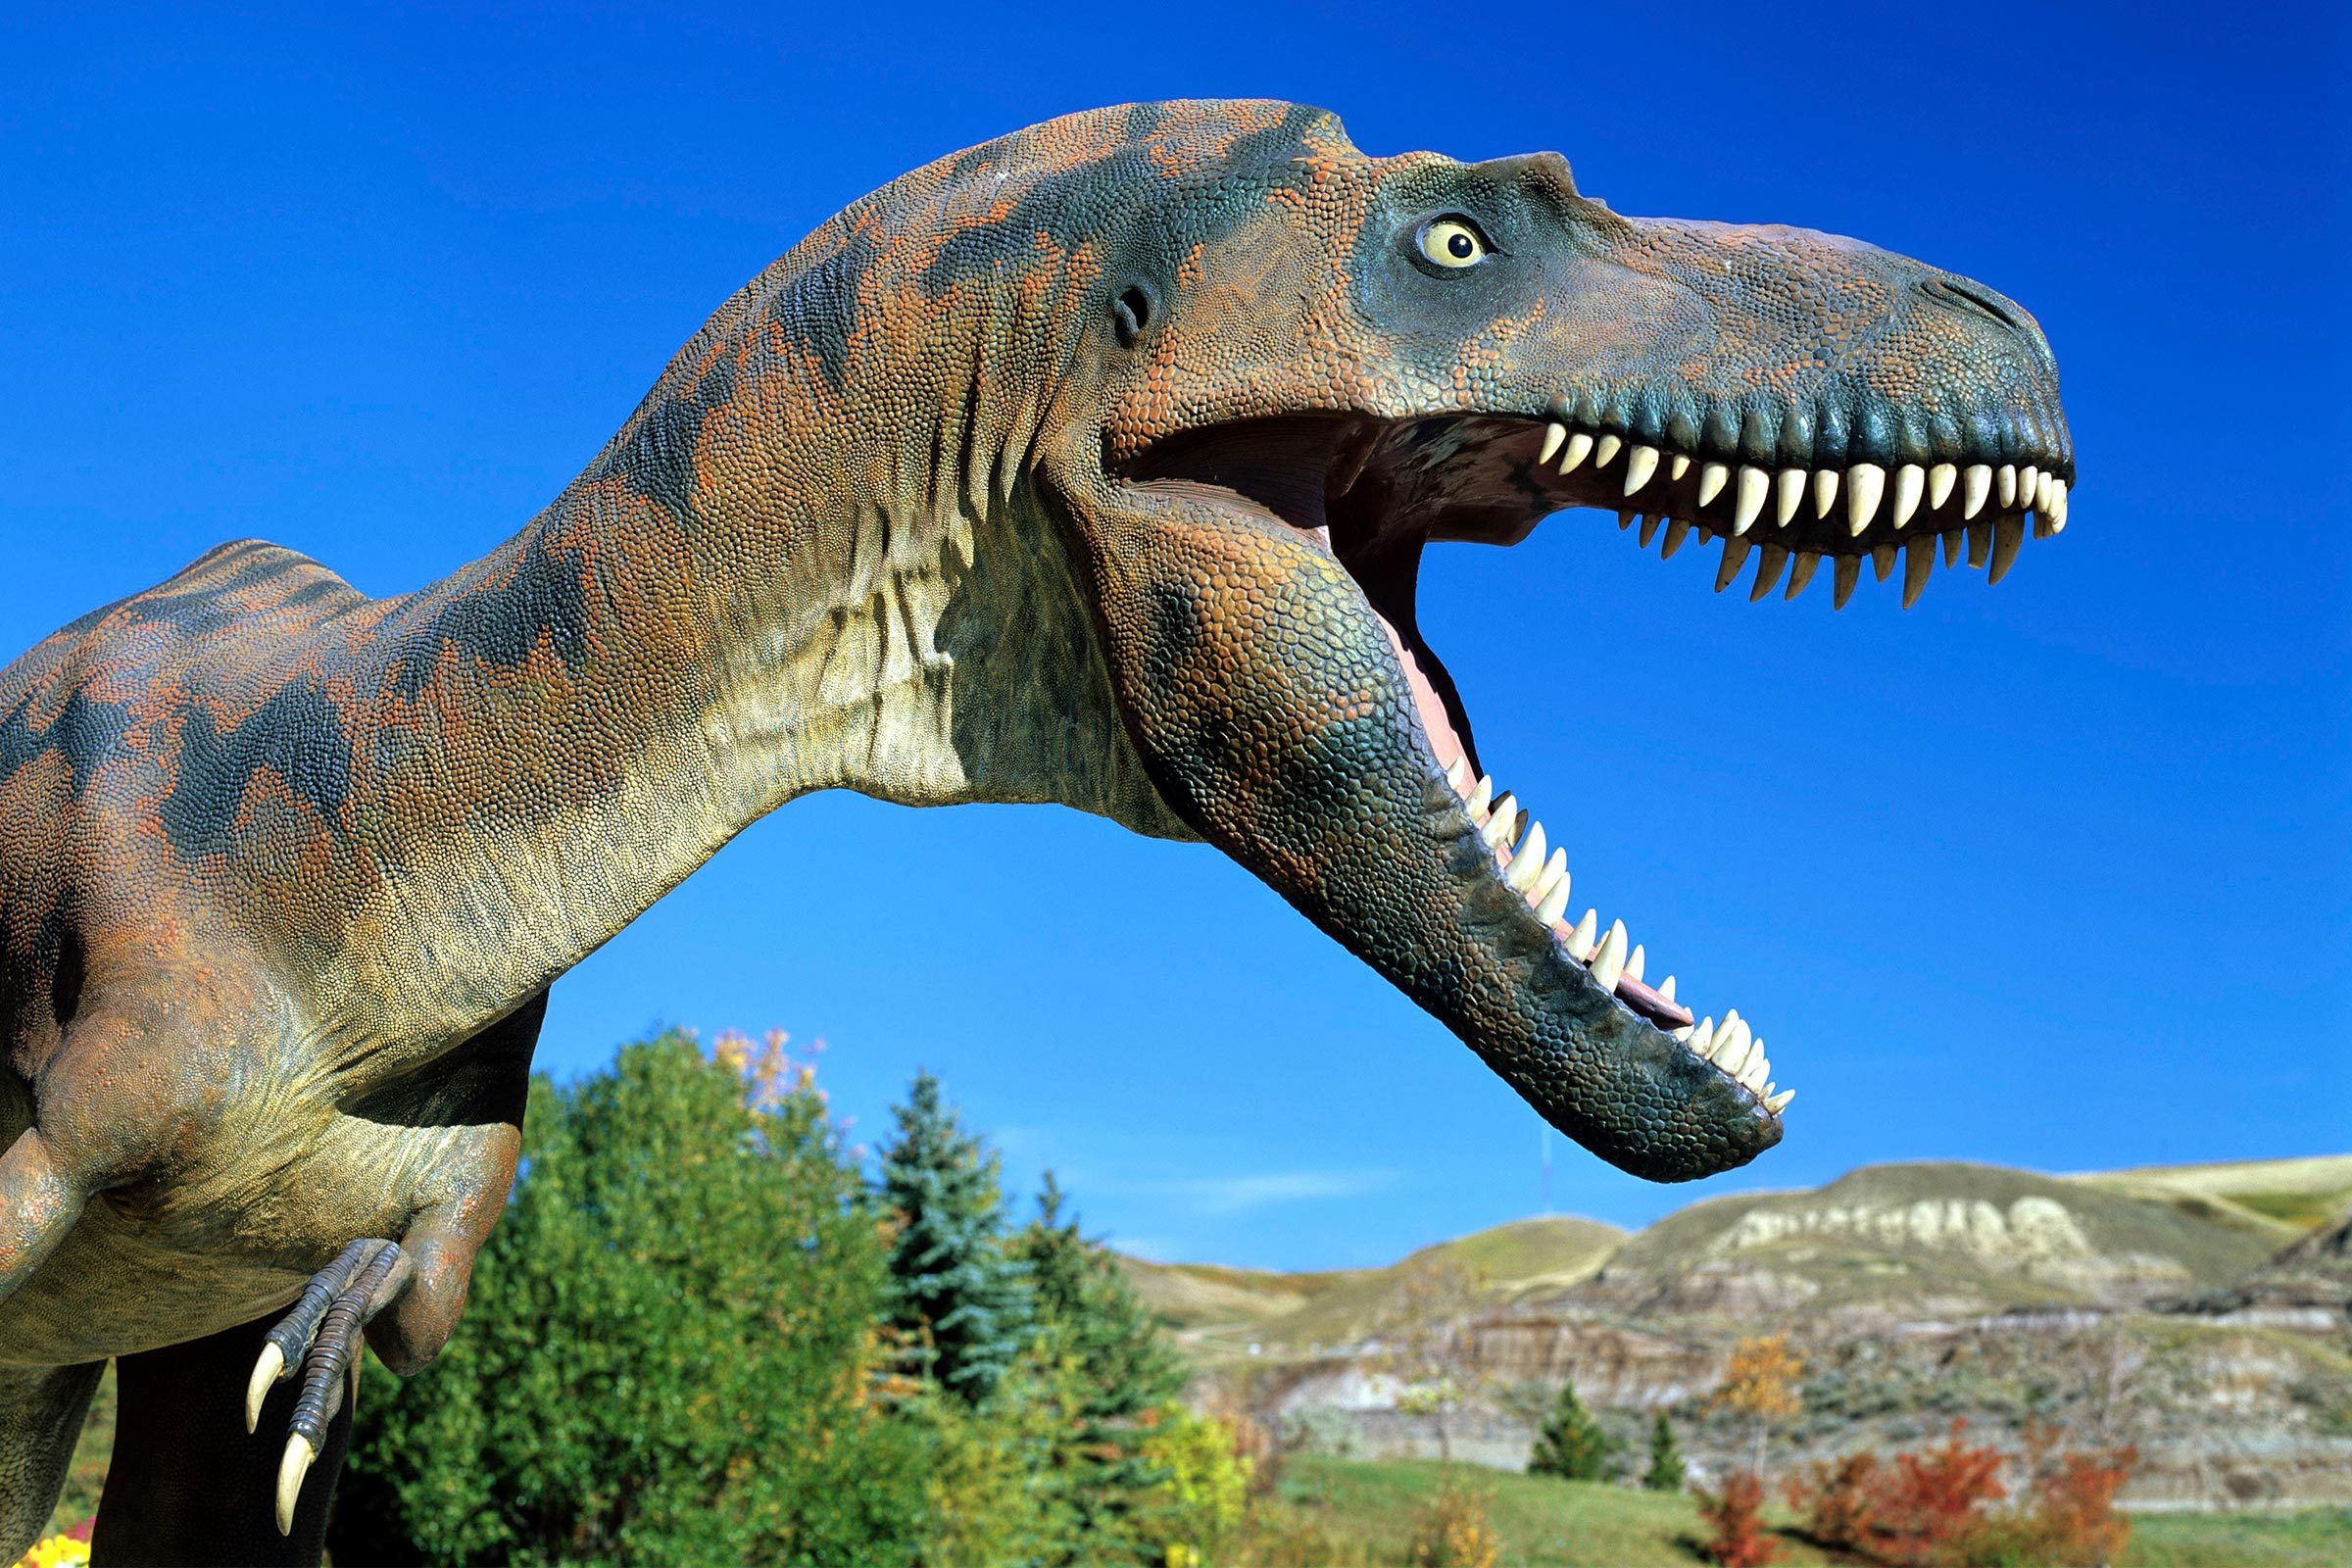 12 de los mejores museos de dinosaurios del mundo 